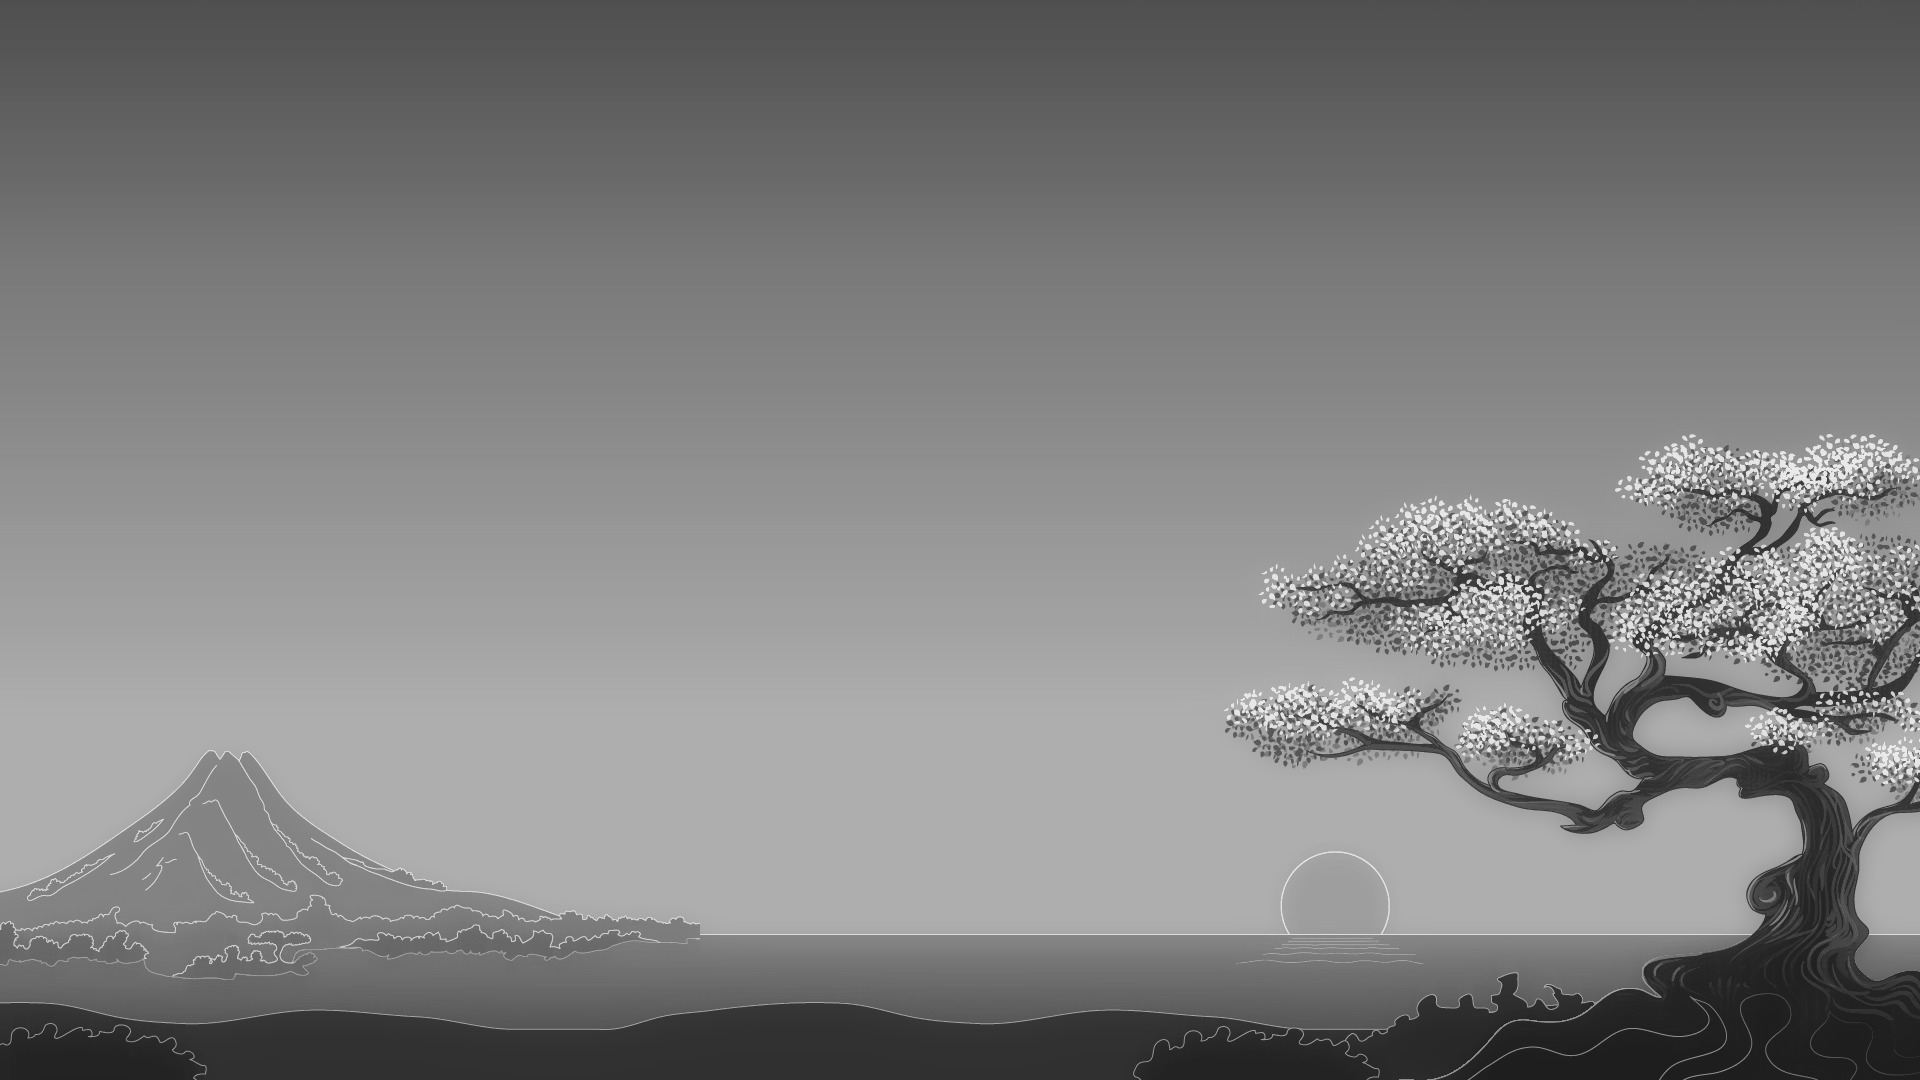 Japanese, Digital art, Minimalism, Simple background, Trees, Nature